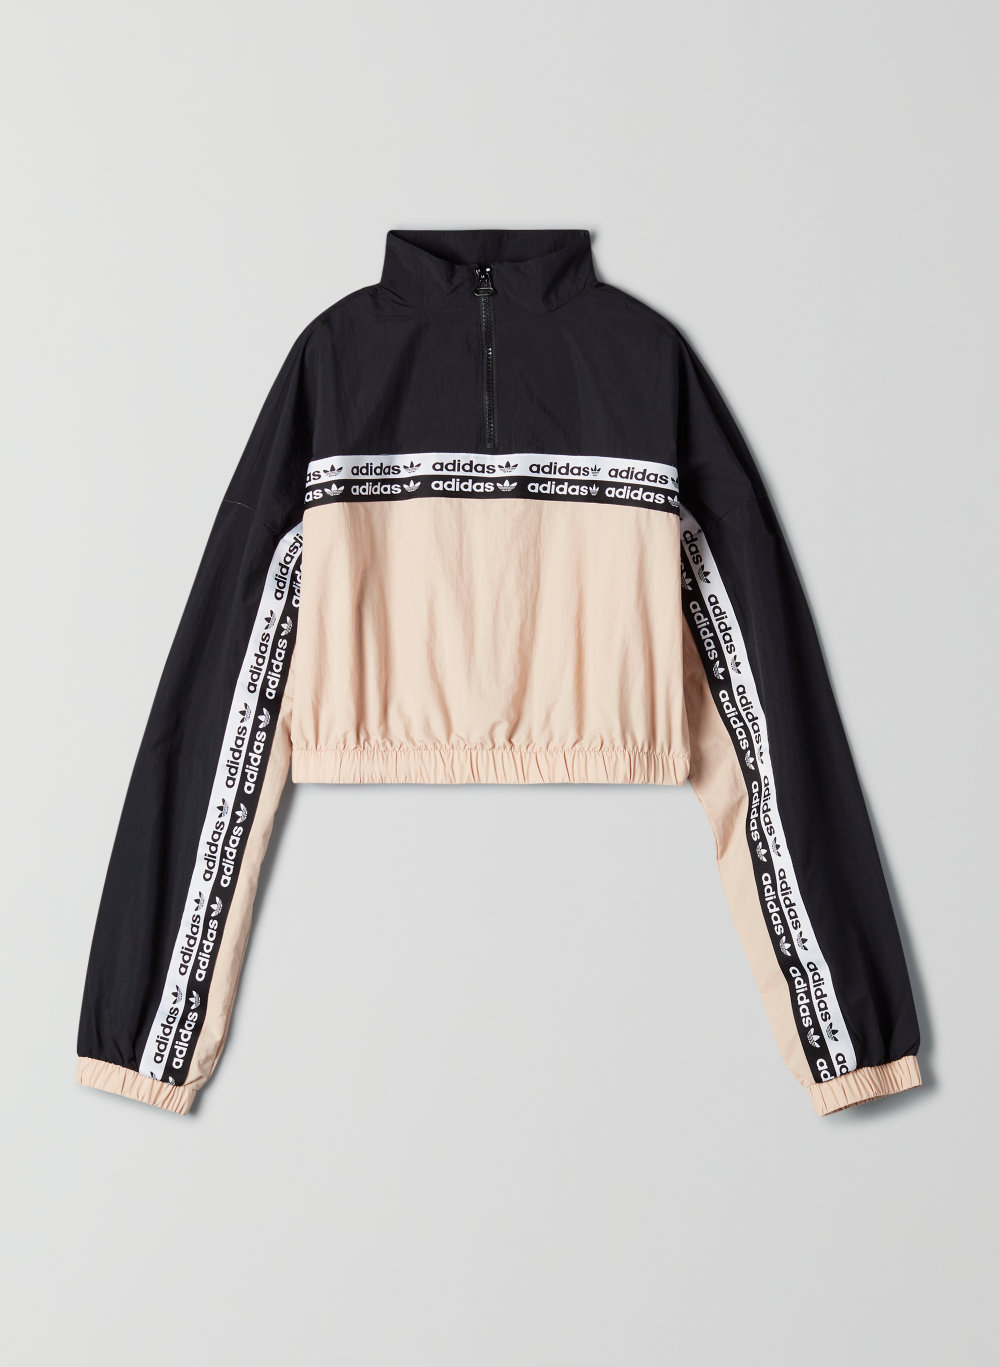 adidas crop top sweater